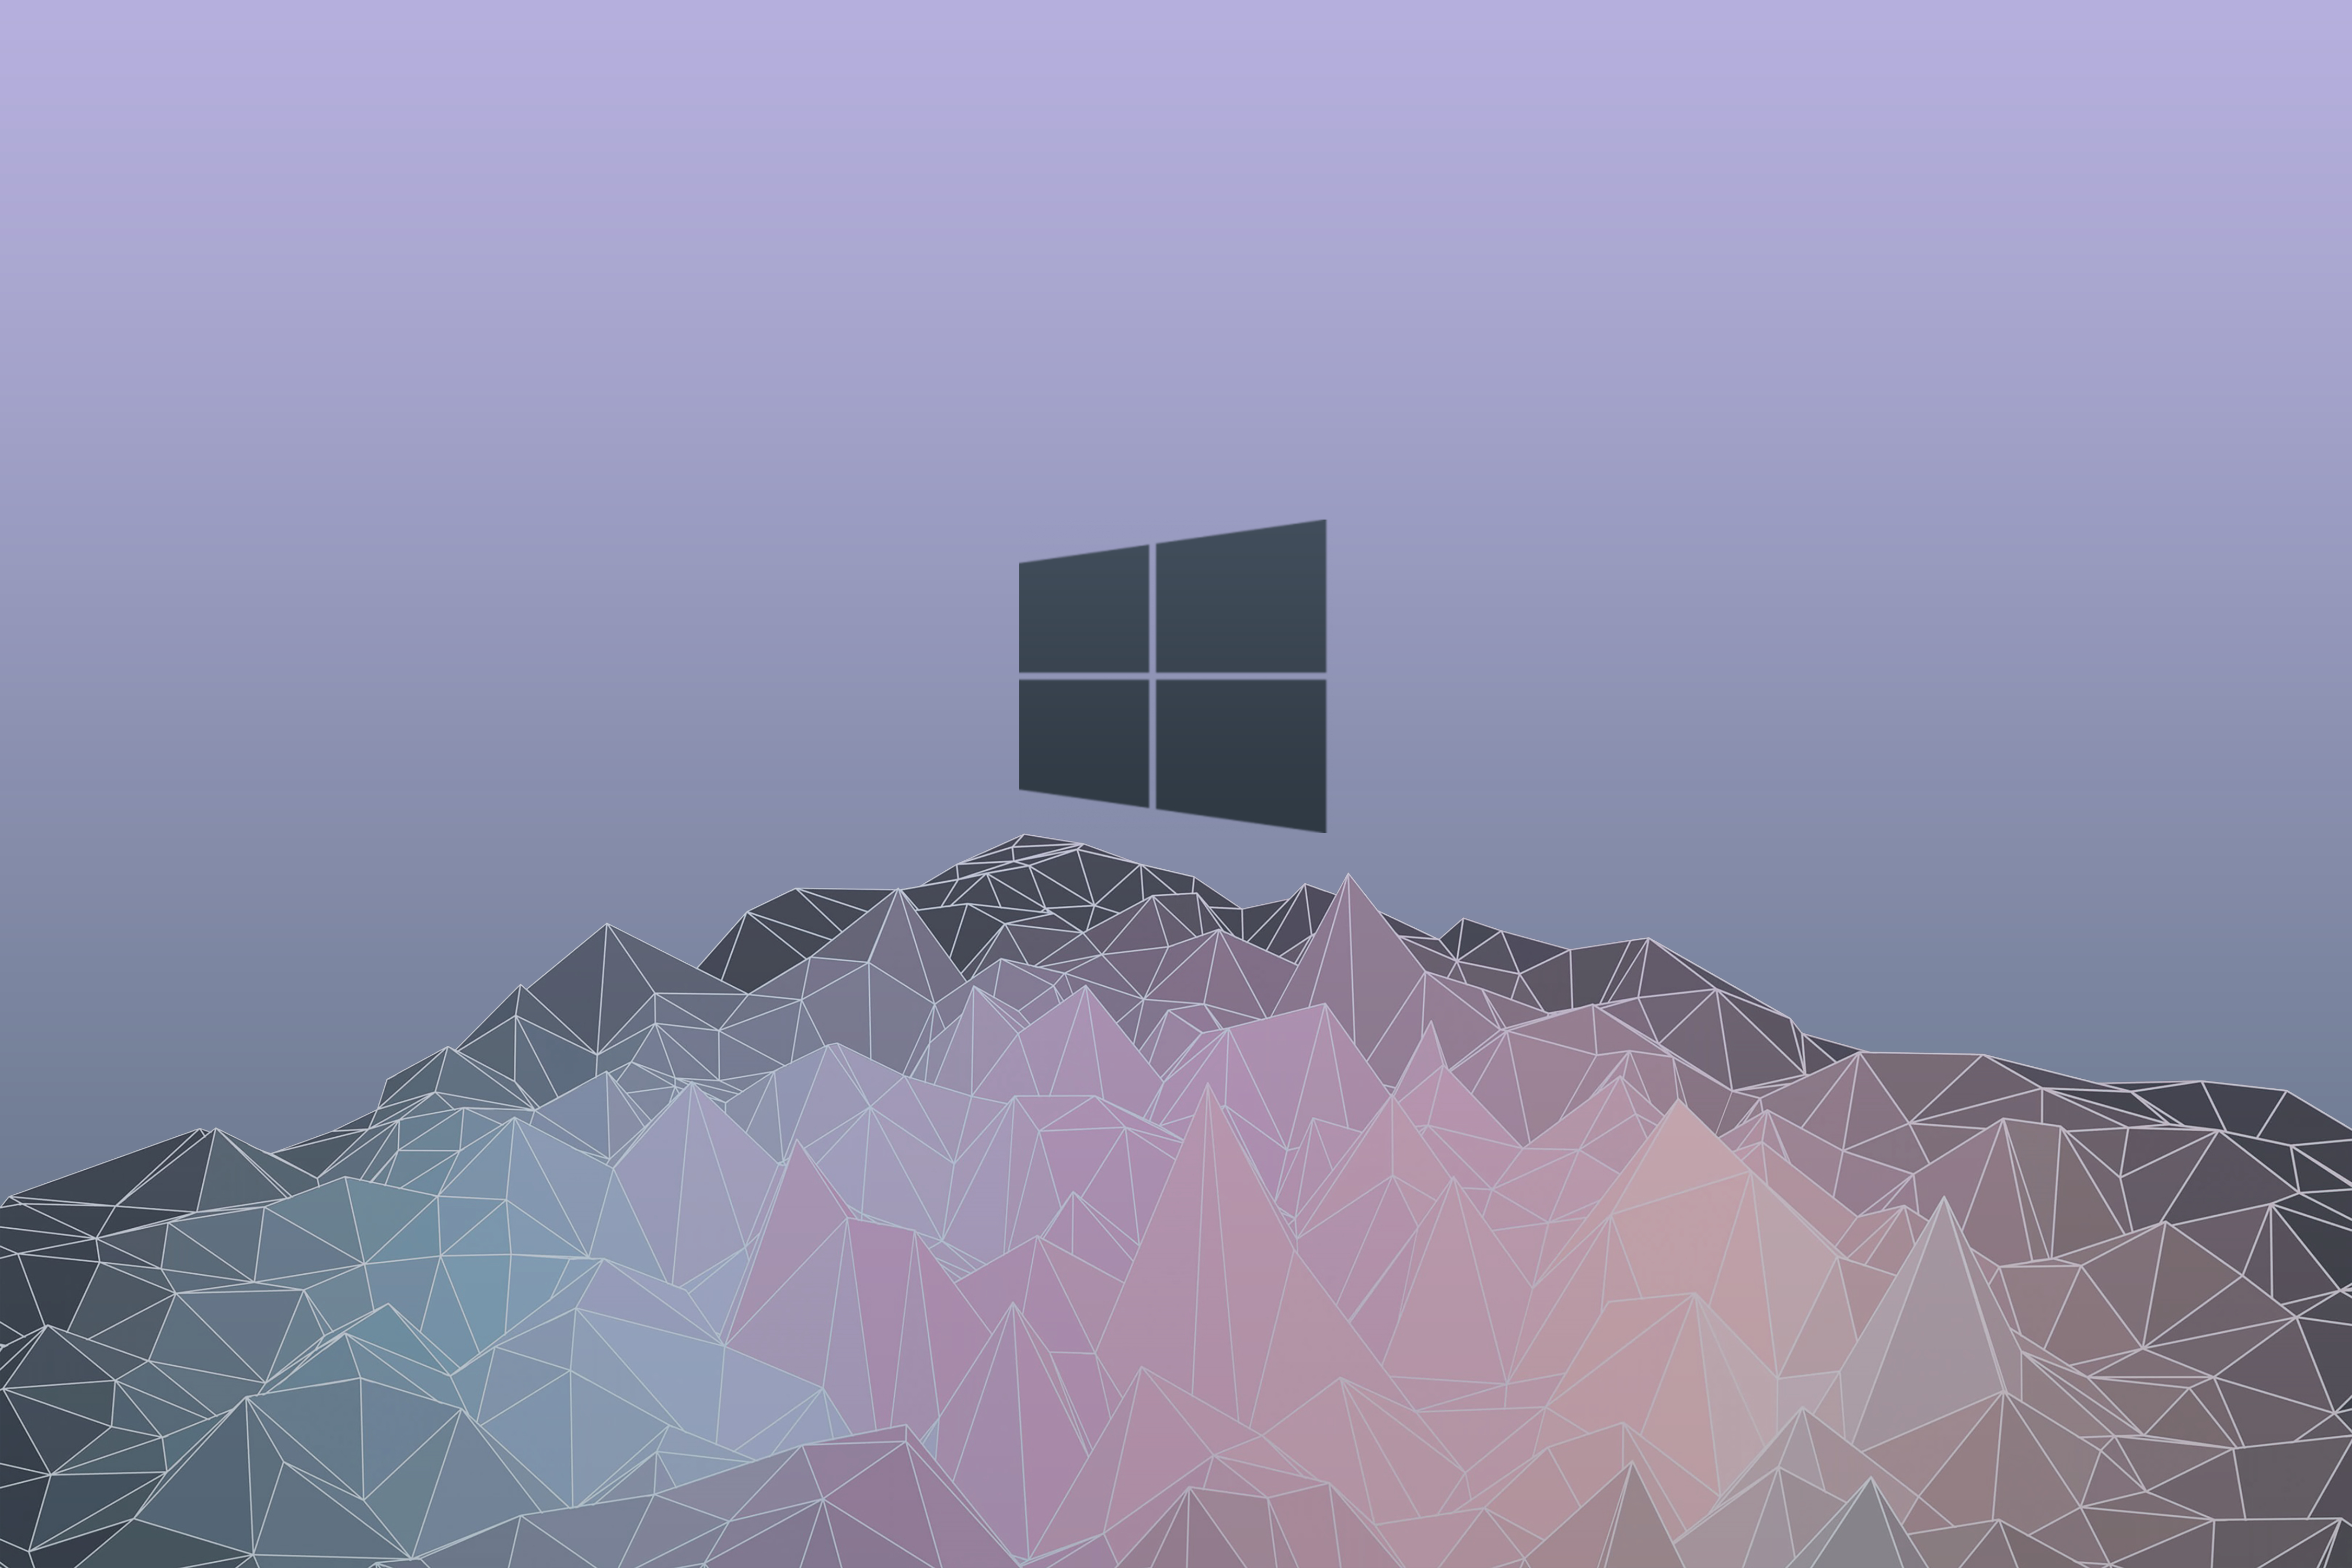 Với hình nền Windows 10 classic, bạn sẽ trải nghiệm một không gian làm việc với phong cách cổ điển thanh lịch. Không chỉ trang trí đẹp mắt, hình nền này còn mang lại cảm giác chuyên nghiệp và nghiêm túc khi làm việc trên máy tính.